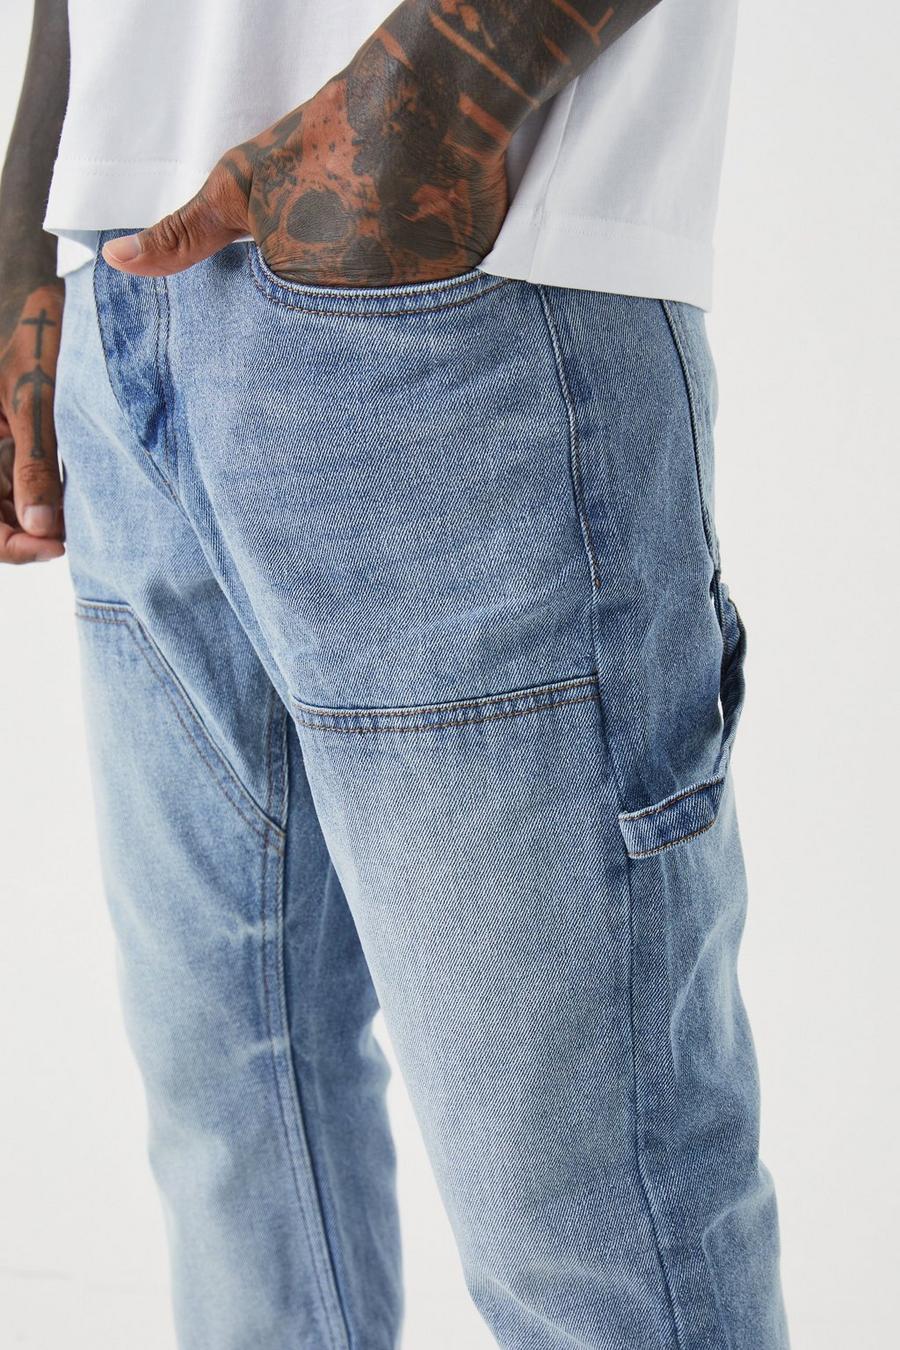 niebieskie jeansowe spodnie slim